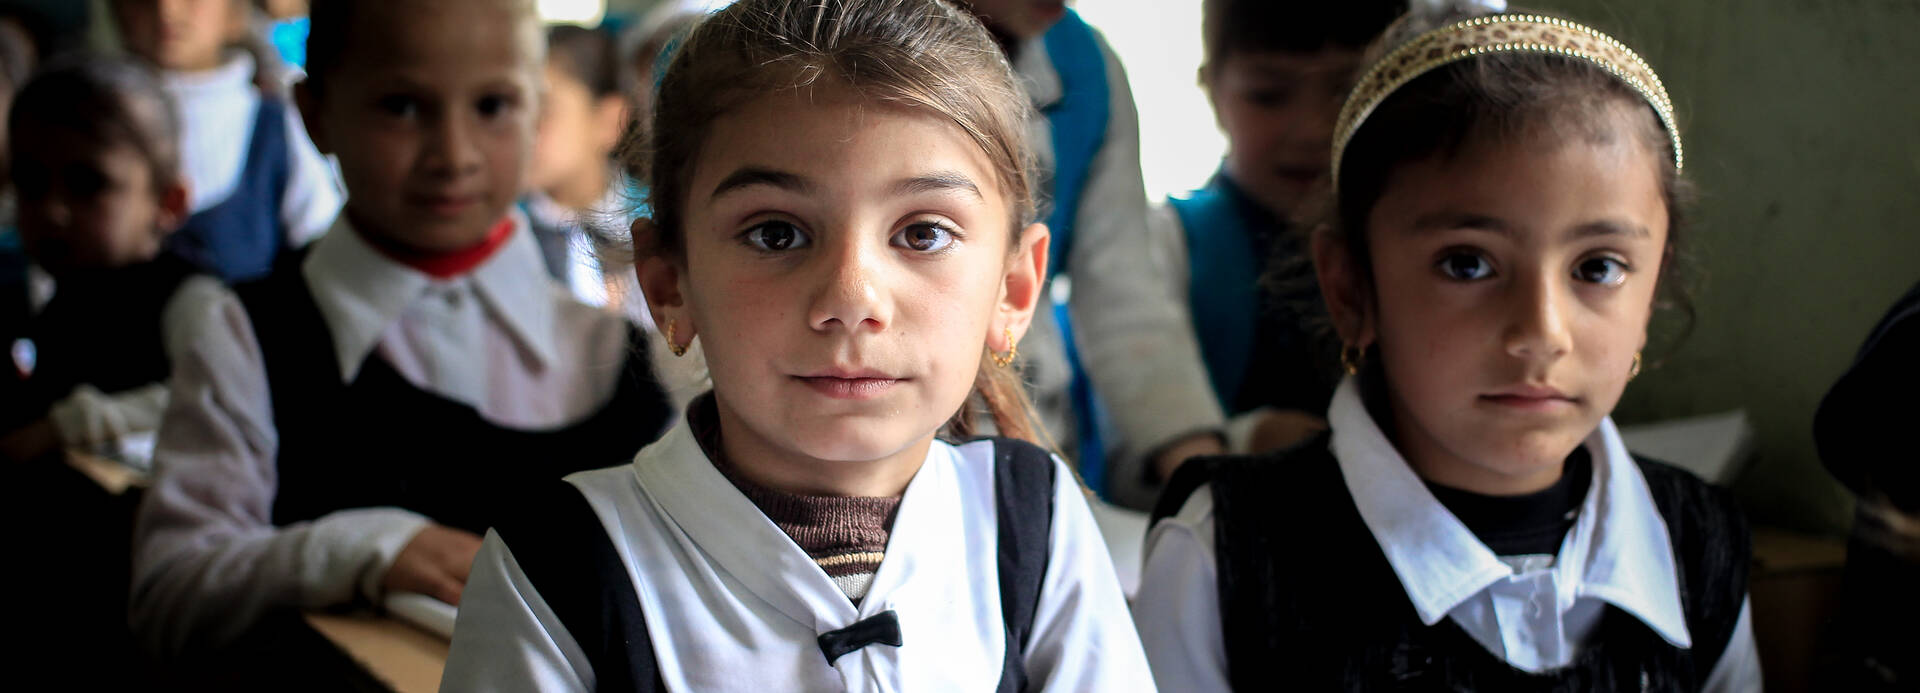 Ein Mädchen im Irak freut sich, dass sie in einer Schule ist und lernen darf.